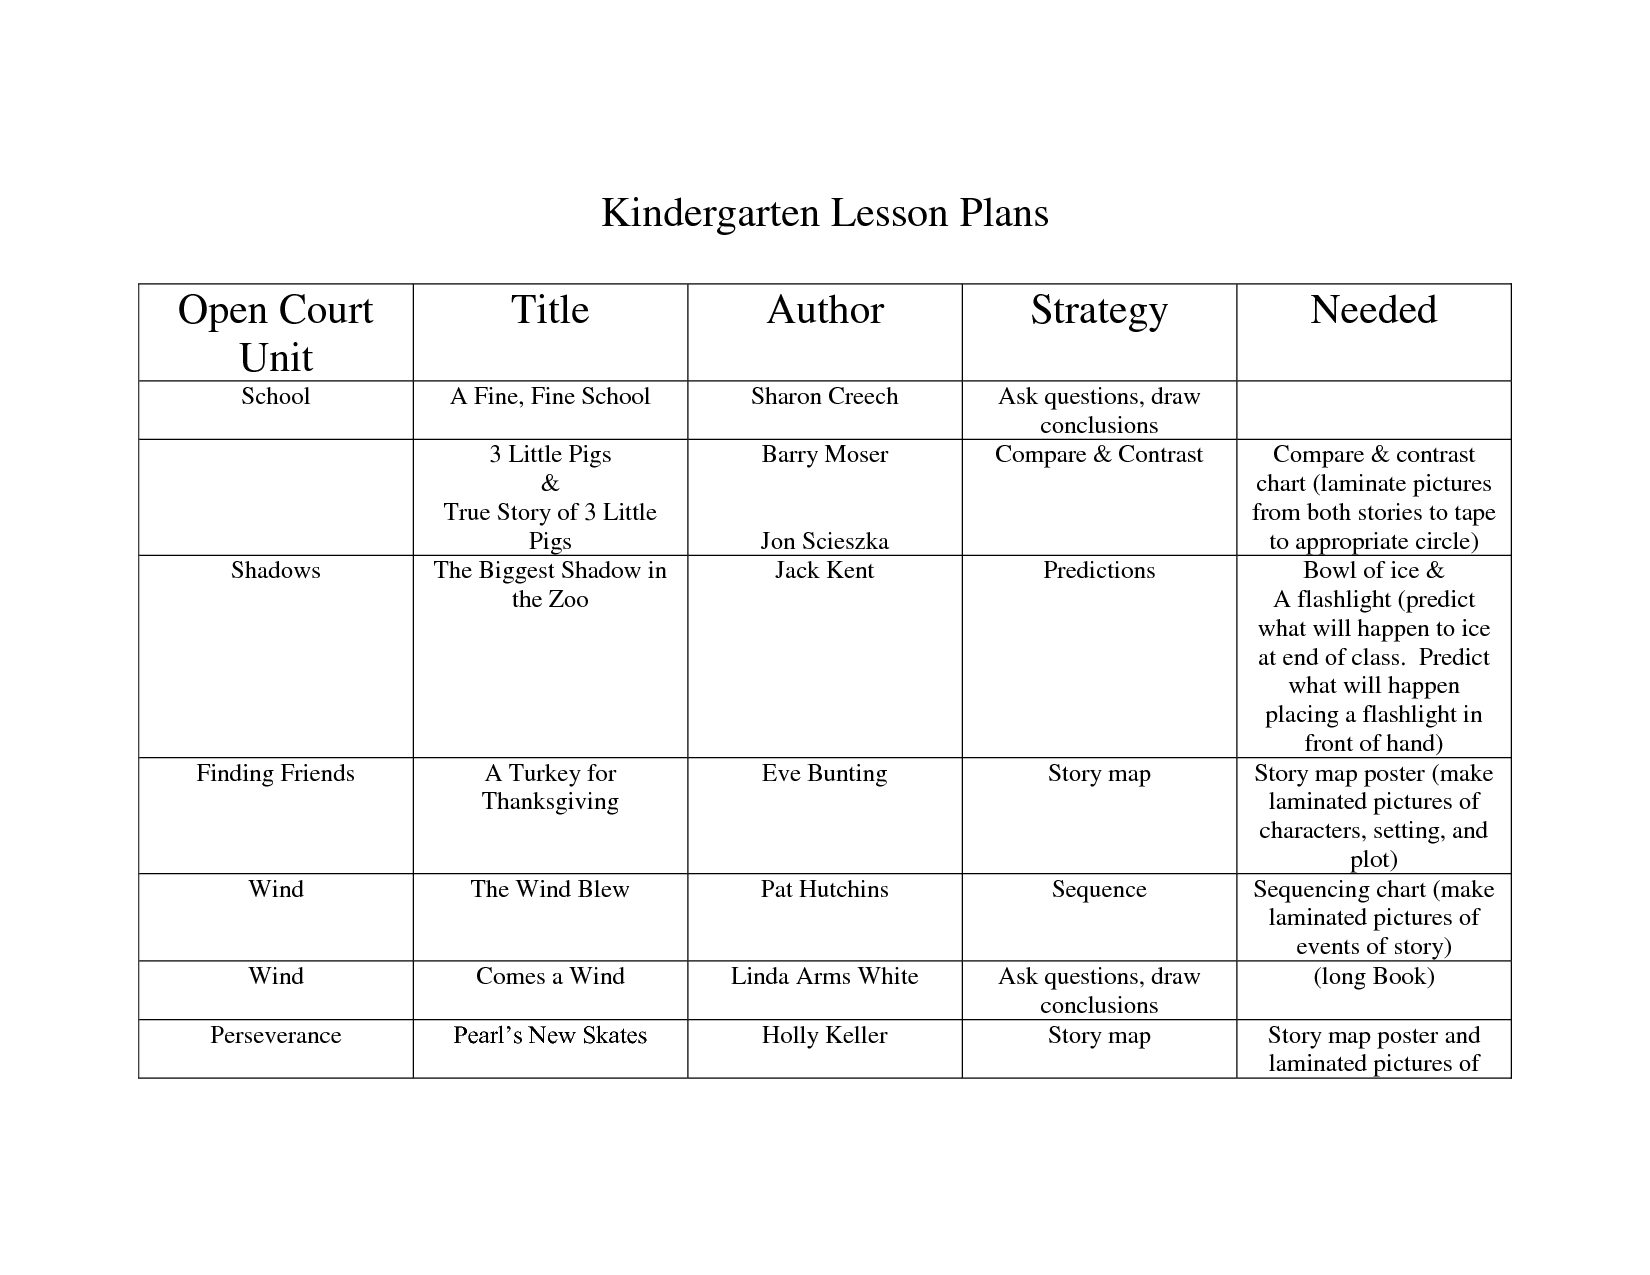 Sample Kindergarten Lesson Plans Image